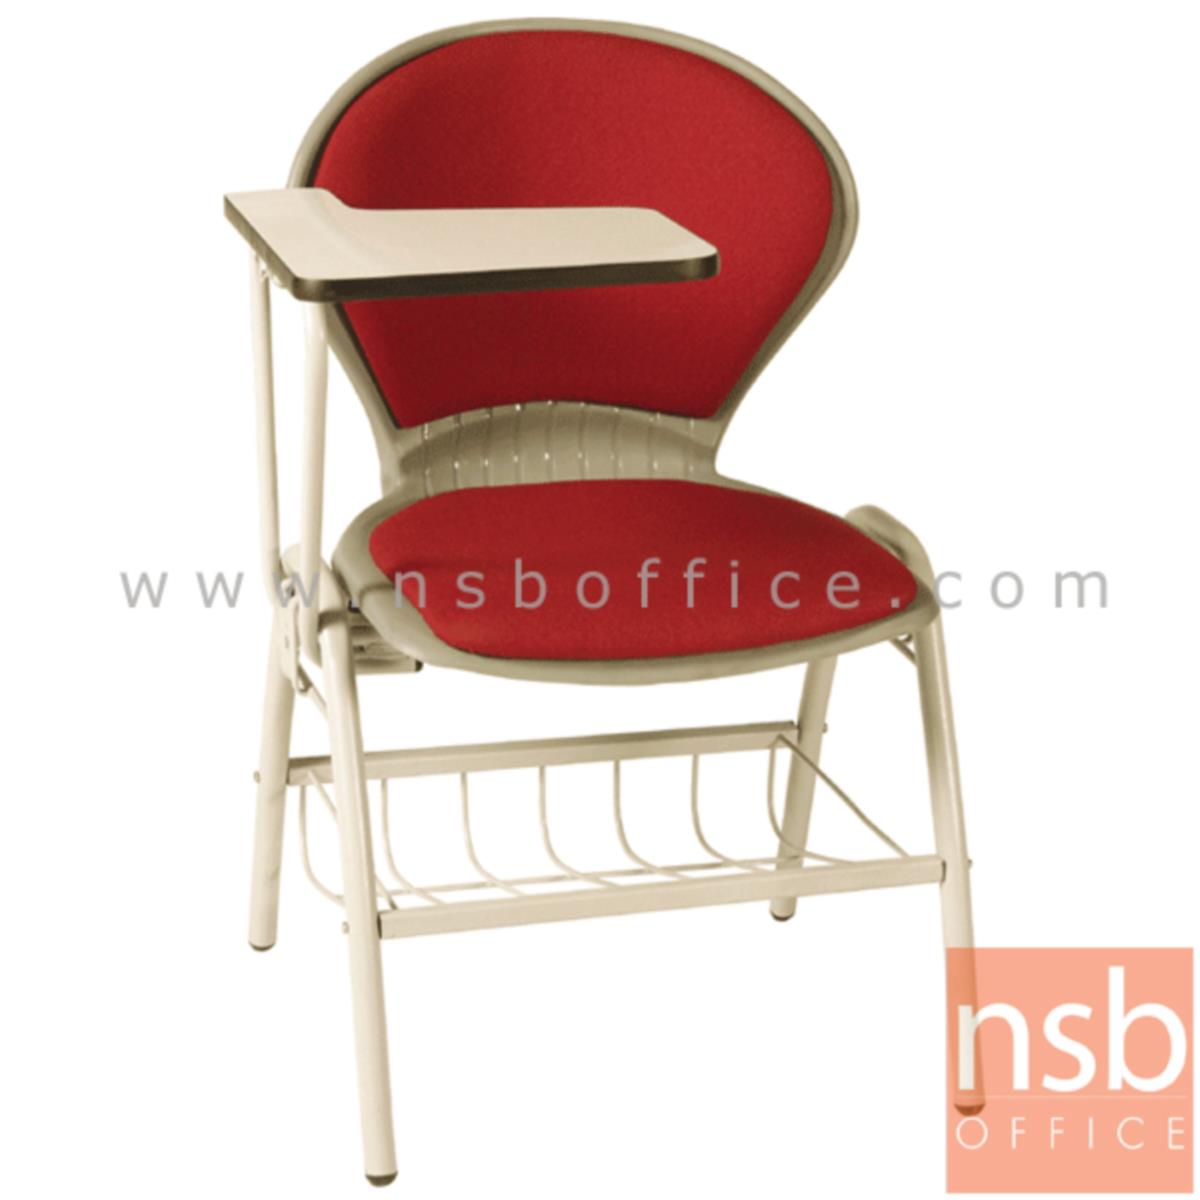 เก้าอี้เลคเชอร์เฟรมโพลี่ รุ่น C076-466 (มีตะแกรงวางของ) ขาเหล็กพ่นสี